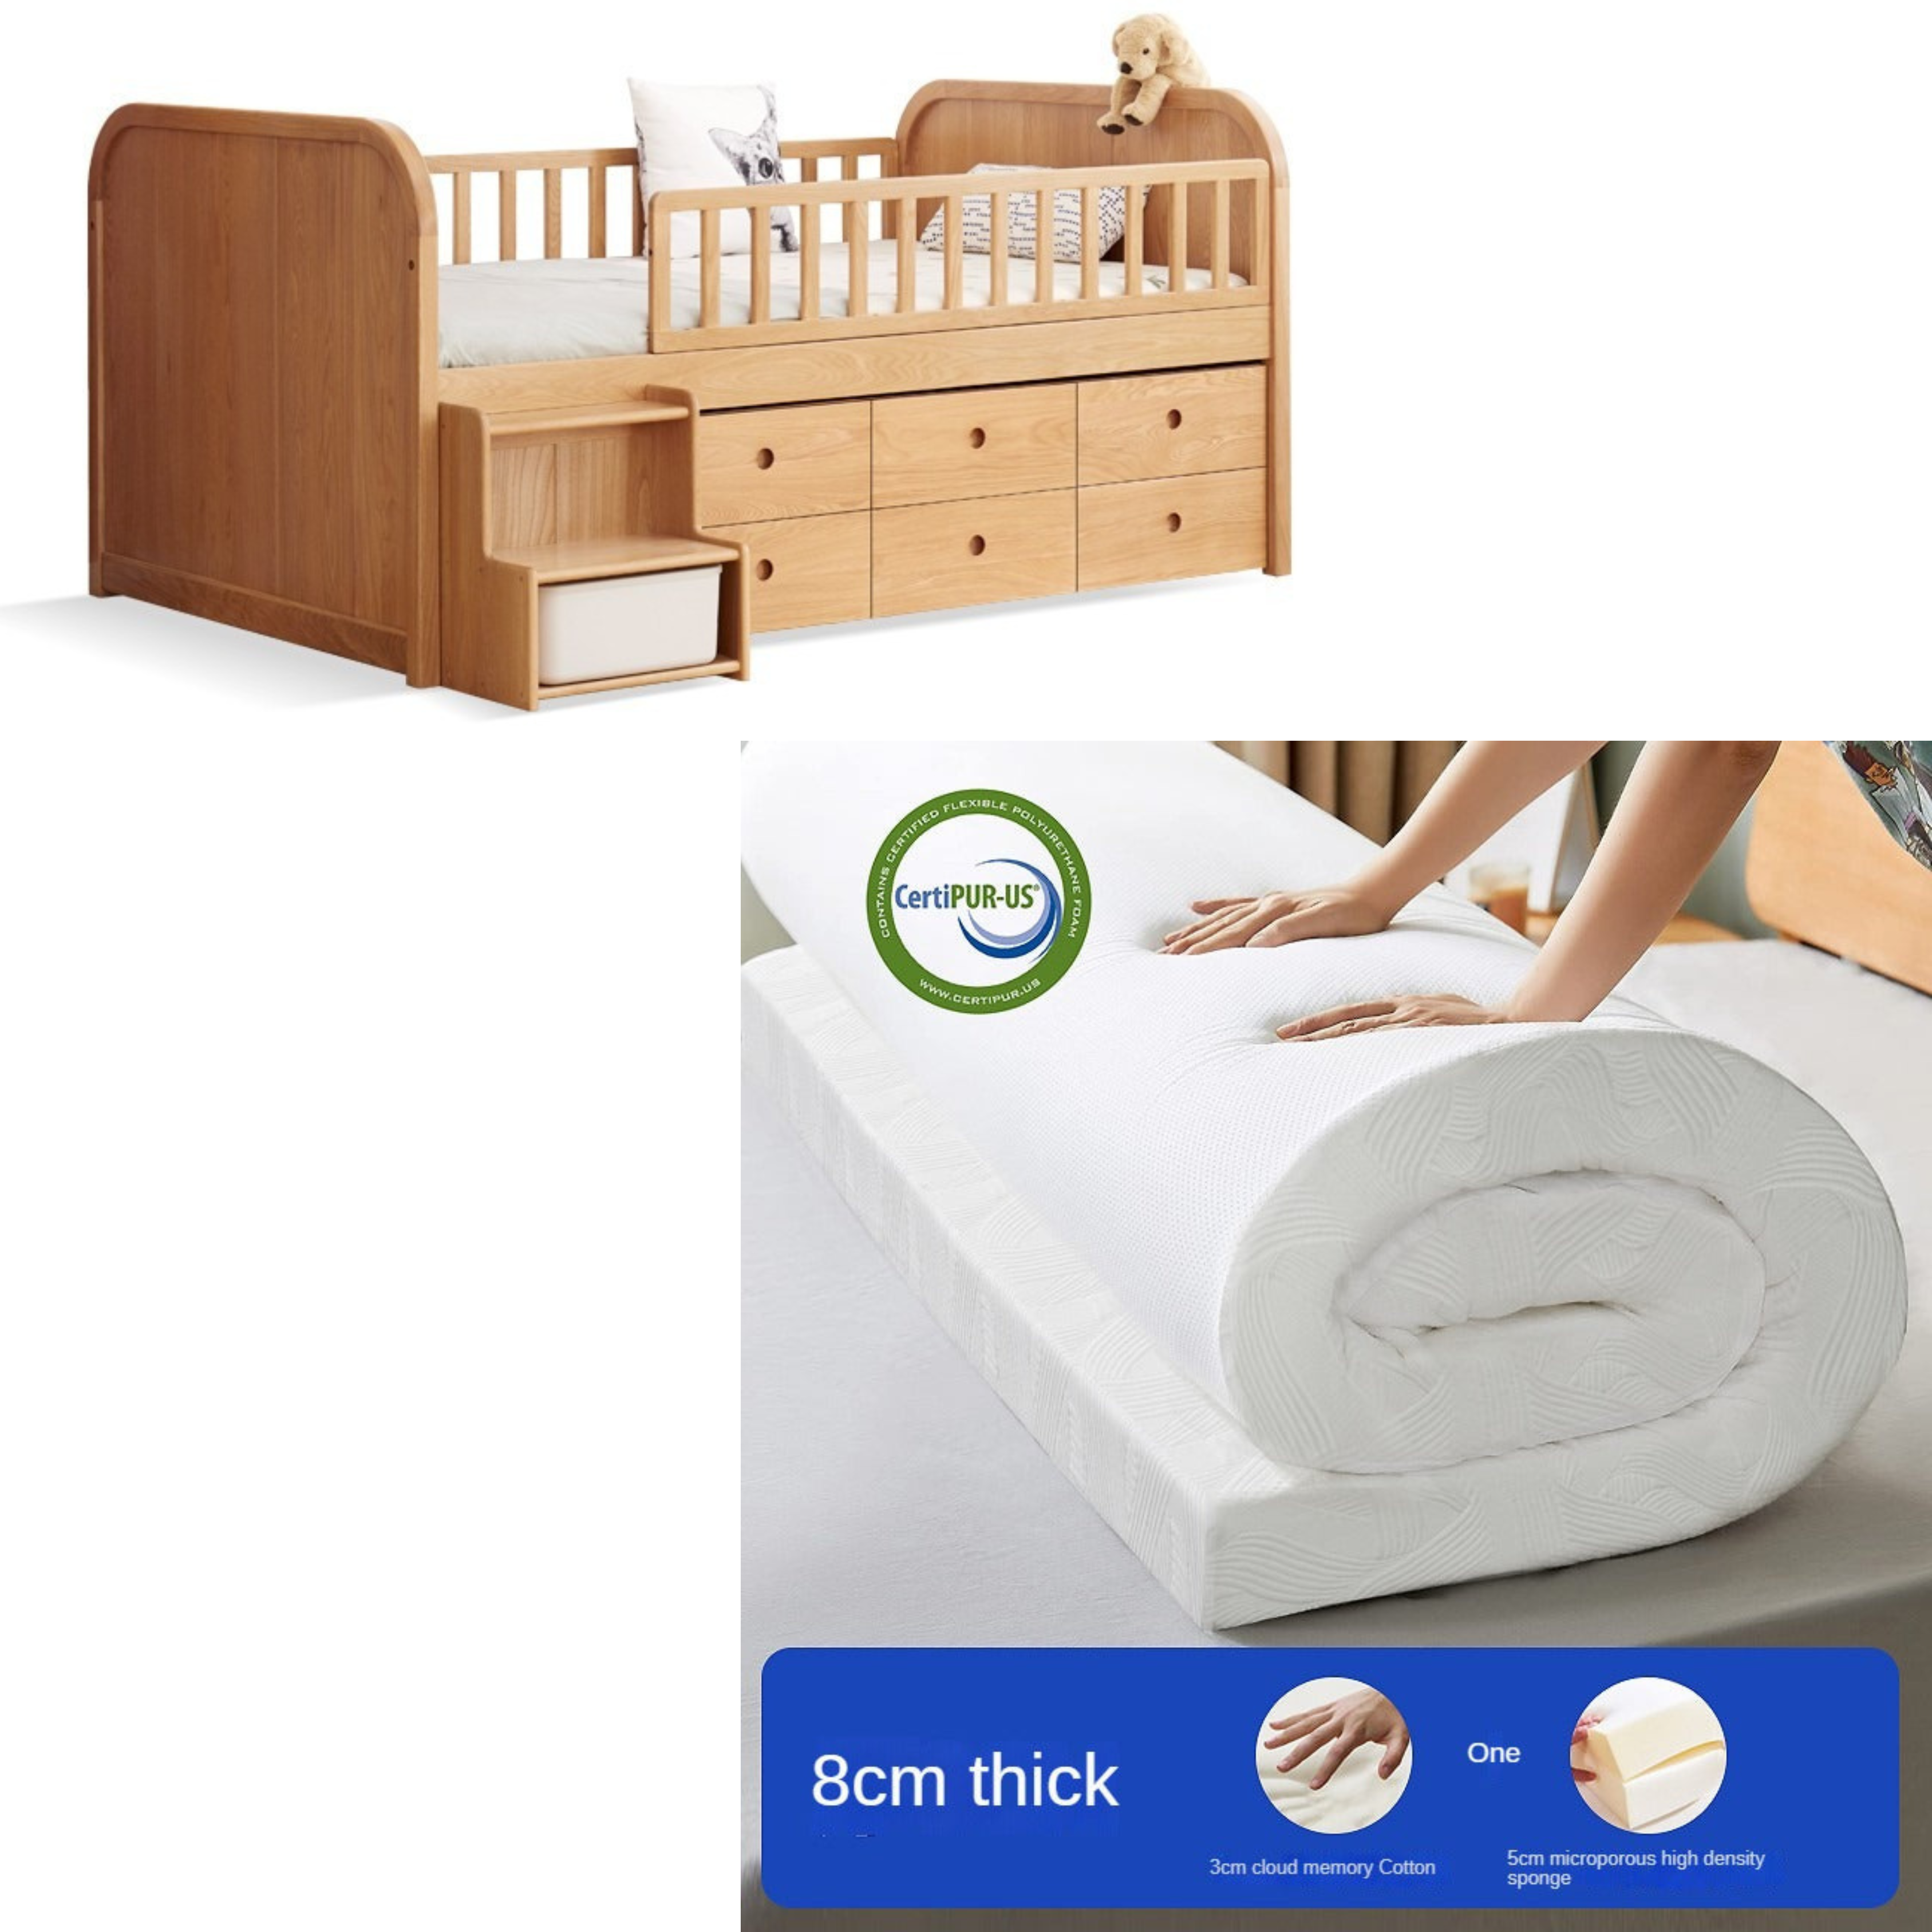 Oak solid wood Multi-functional storage bed)